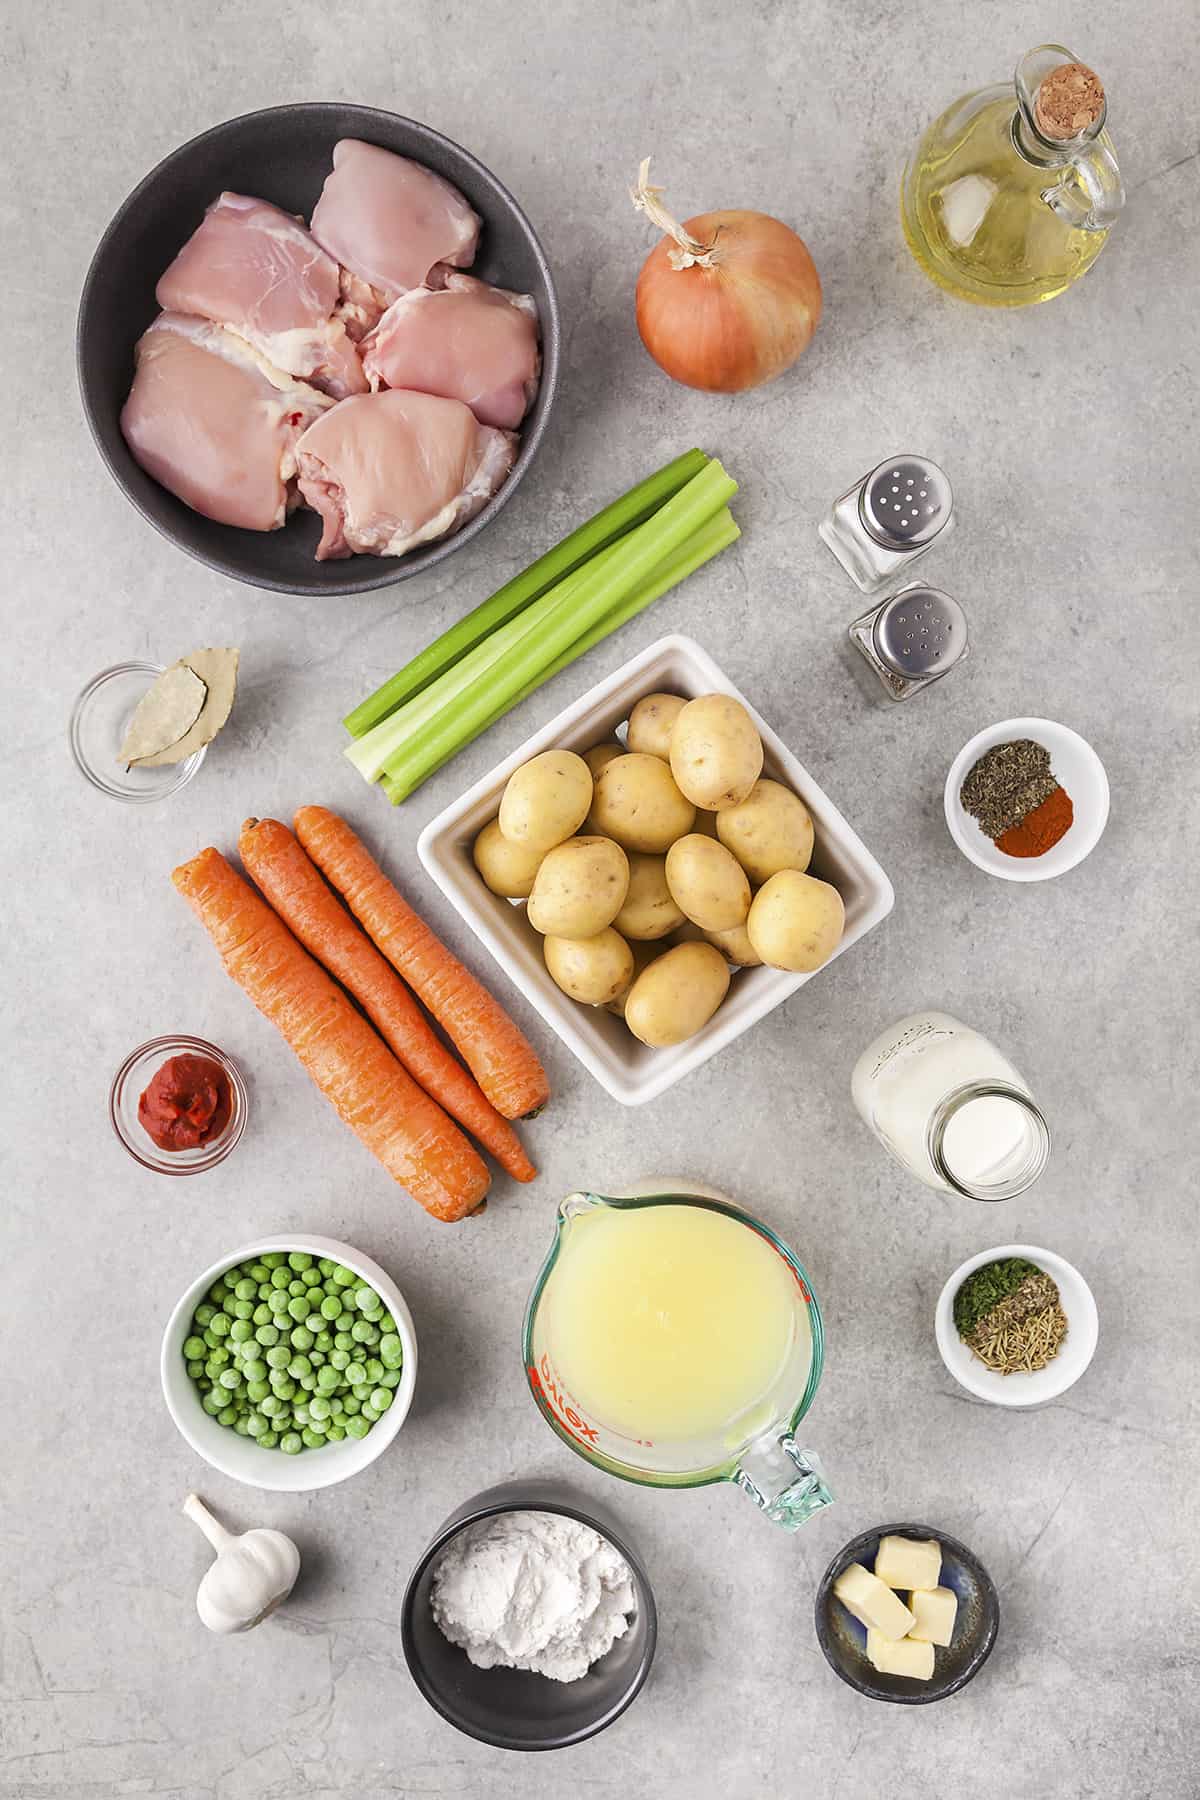 Ingredients for chicken stew recipe.